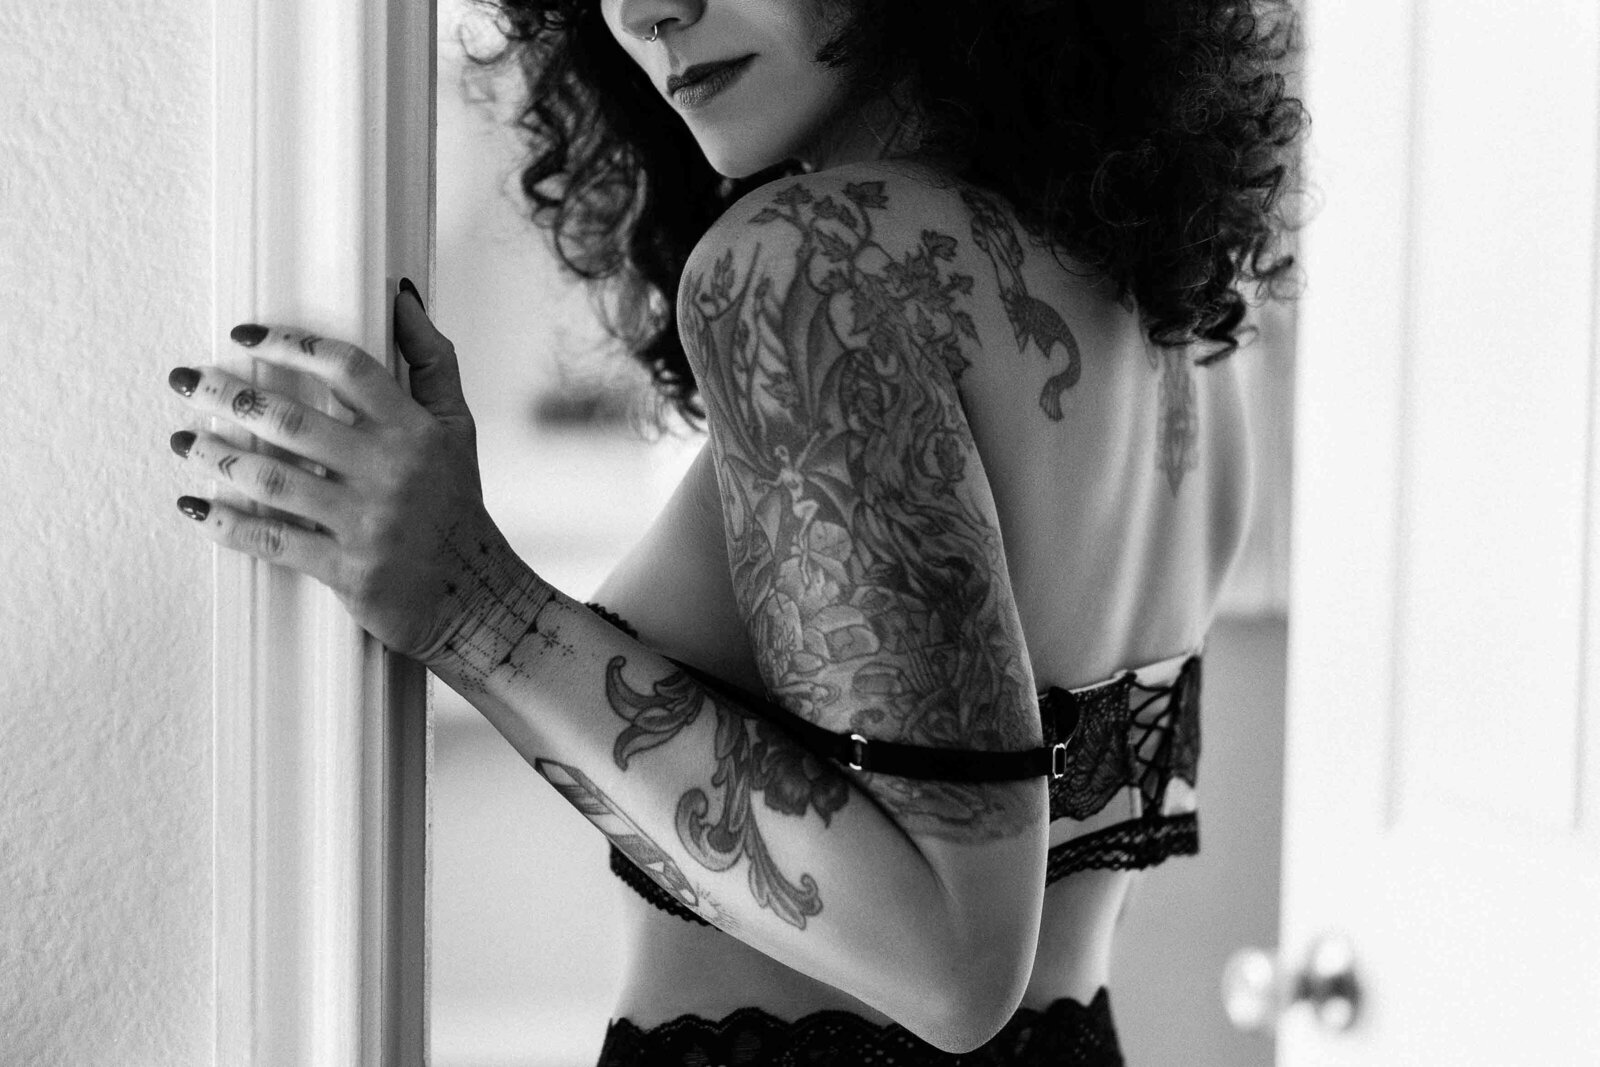 tattooed woman undressing at bedroom door